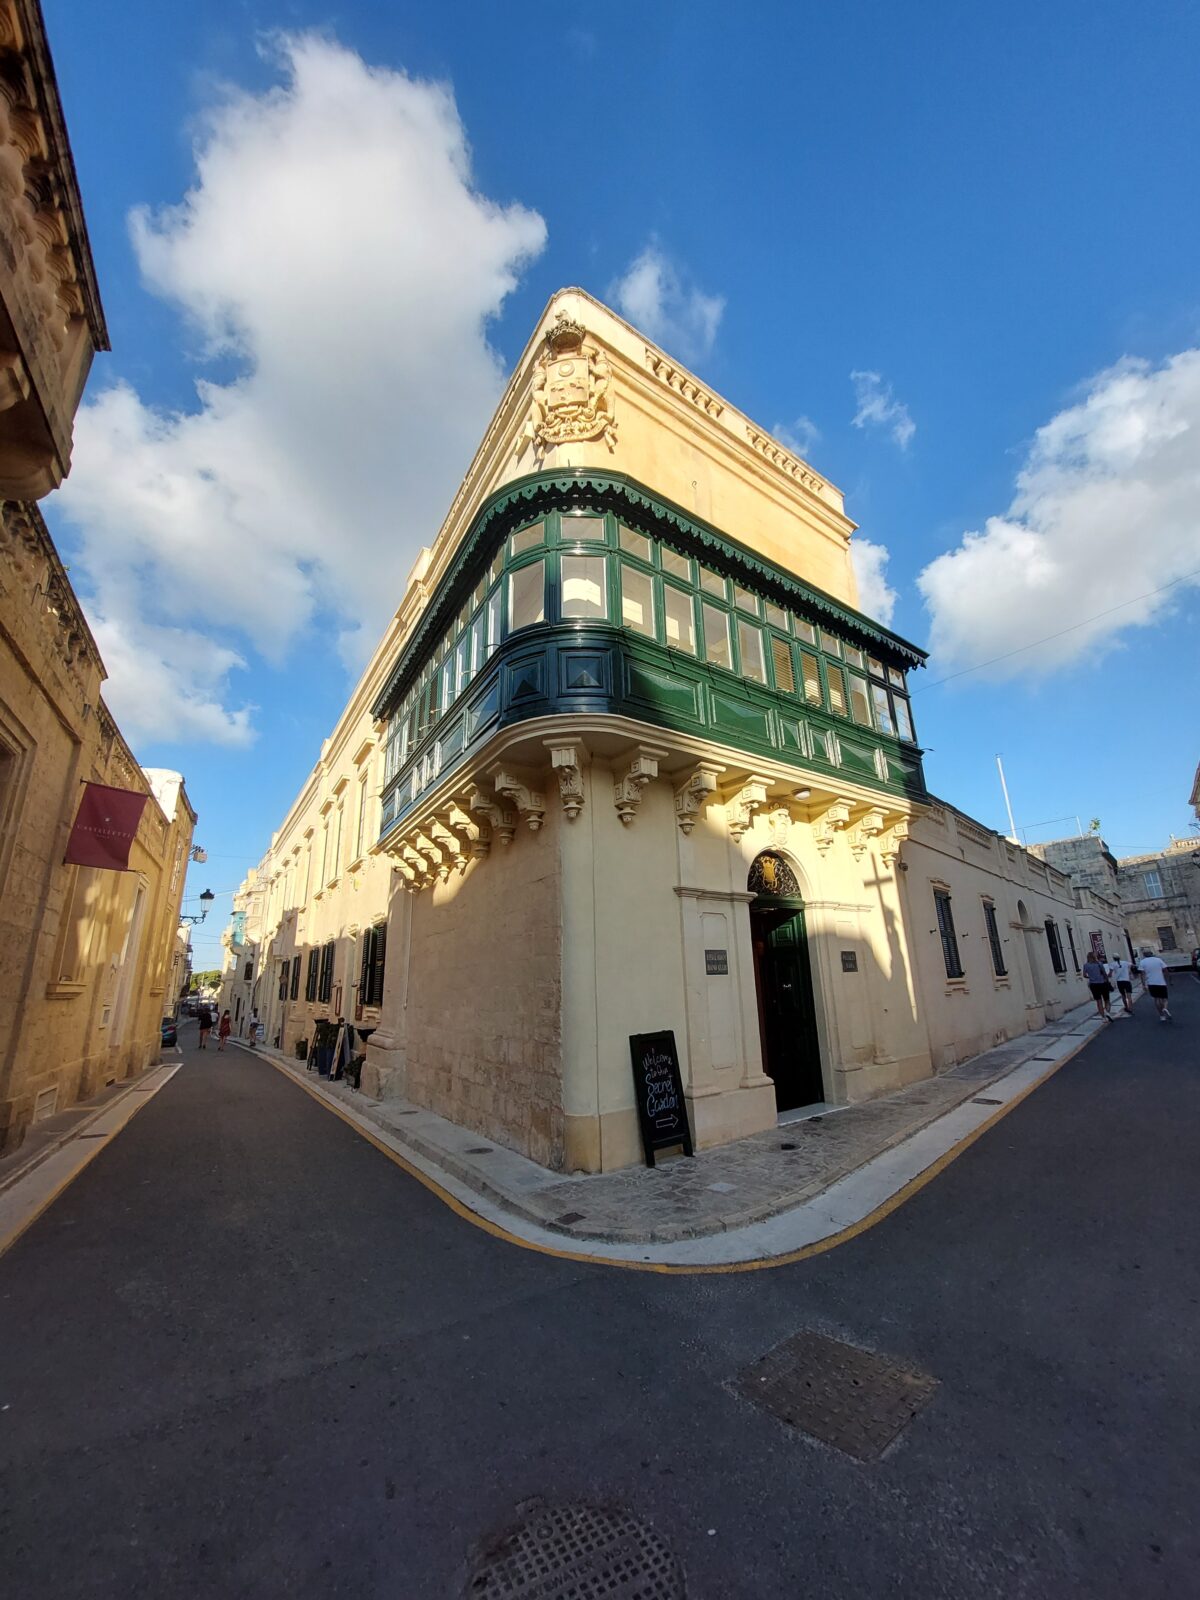 Visiter Malte en 7 jours, l’île aux multiples beautés